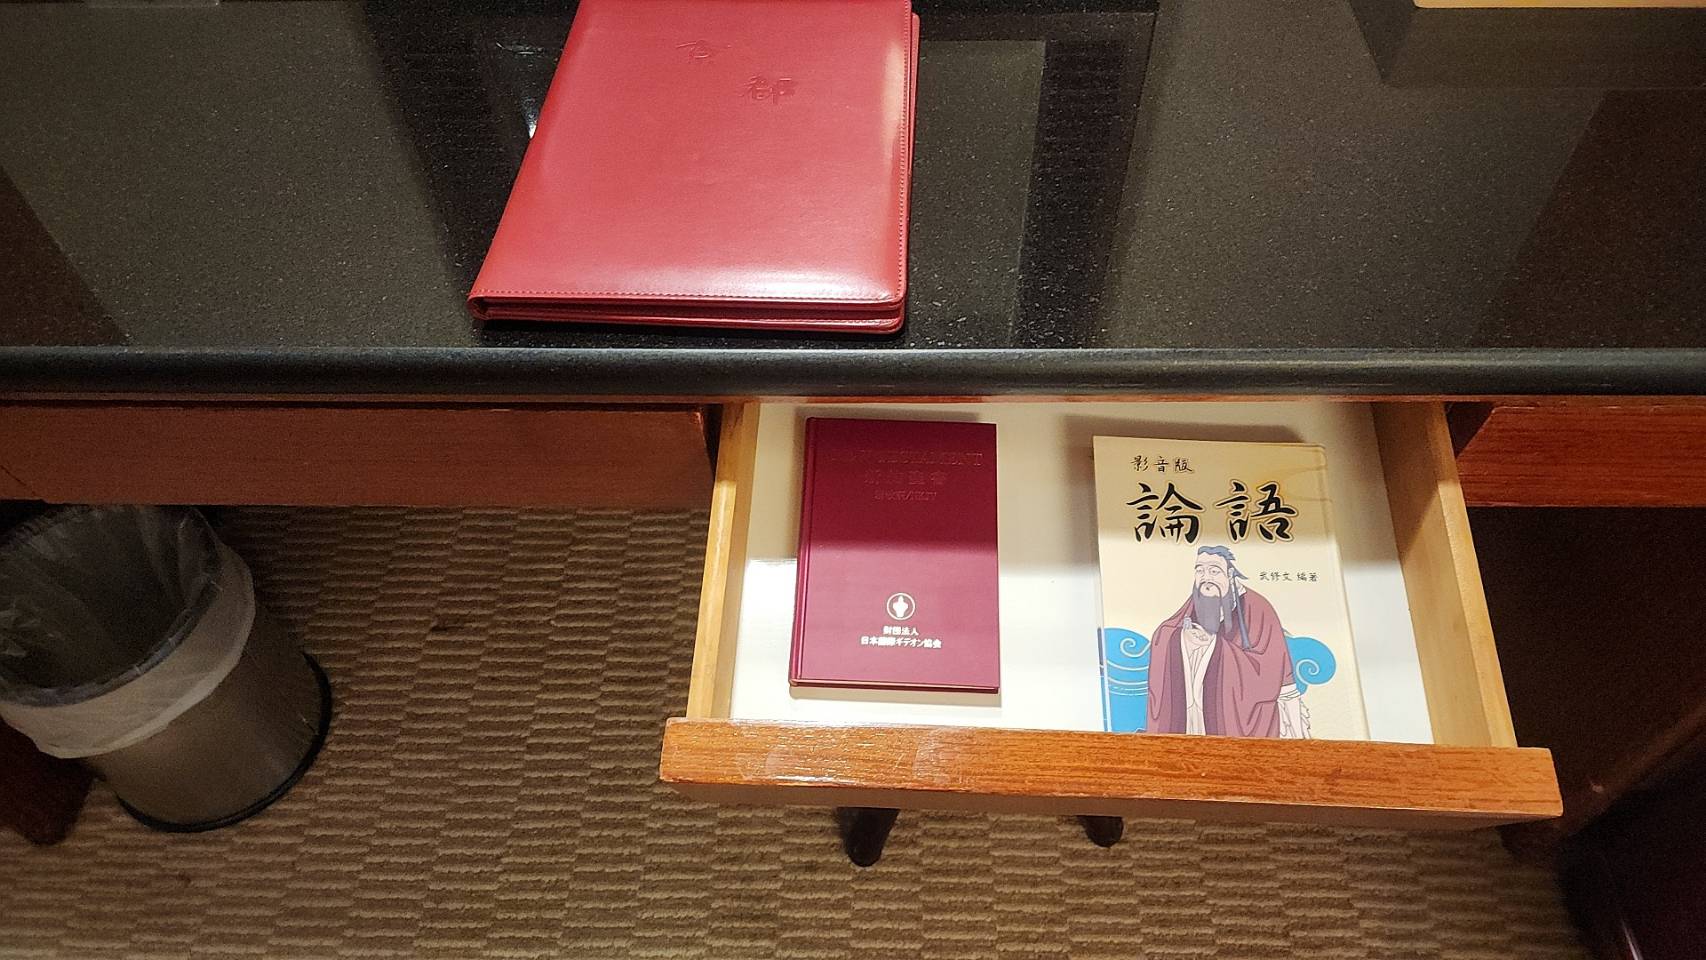 以日客为主的京都商务旅馆，饭店房间内的抽屉打开，除了常见的圣经外，还有特别印制的影音版《论语》。图／徐银树提供